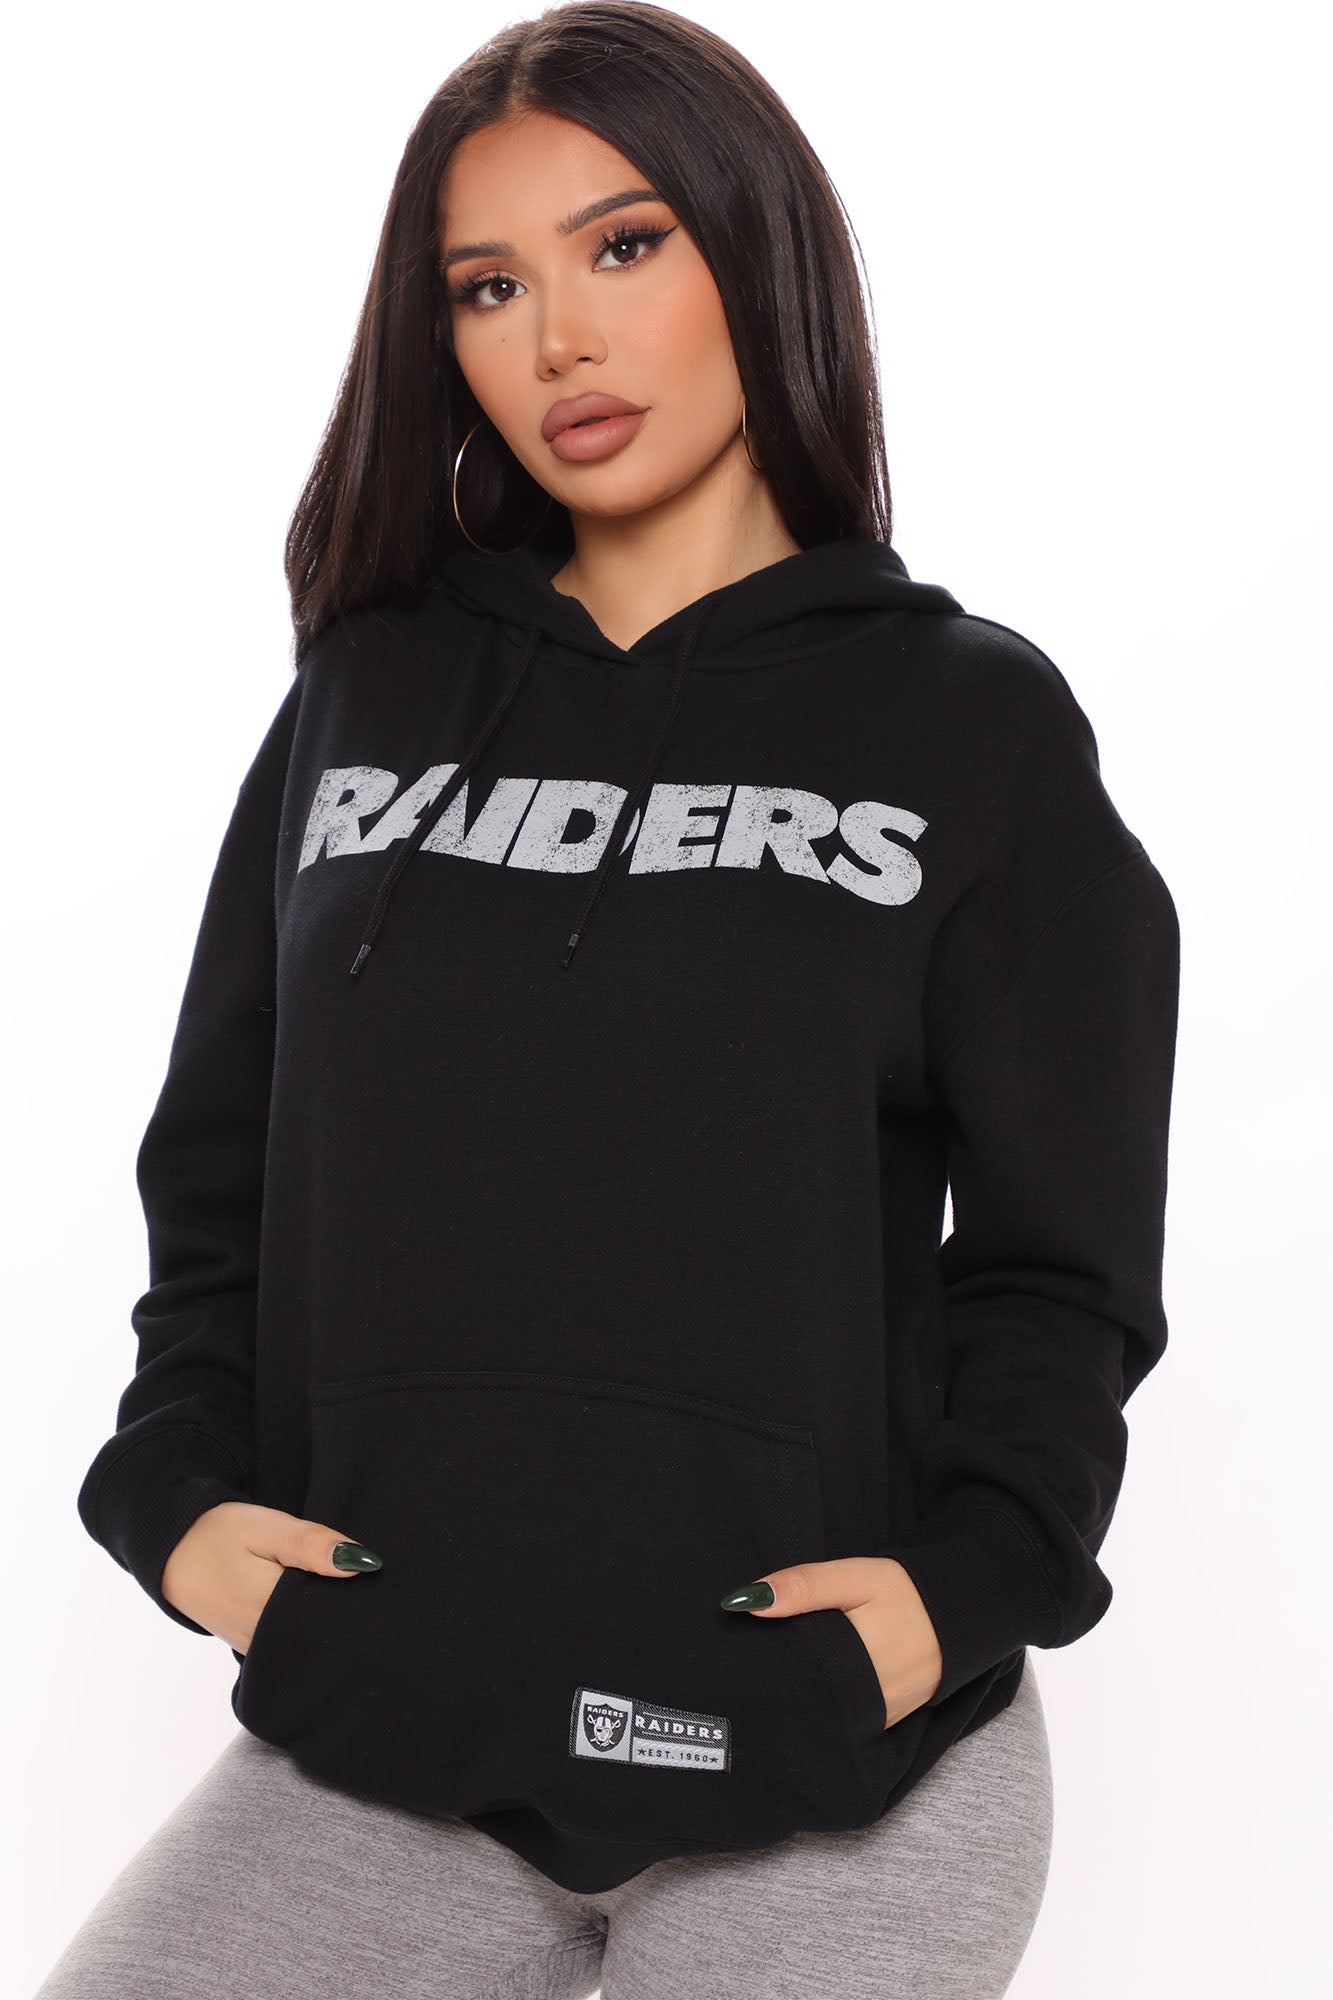 Las Vegas Raiders Sweatshirt - Black  Fashion, Fitness fashion outfits,  Black sweatshirts